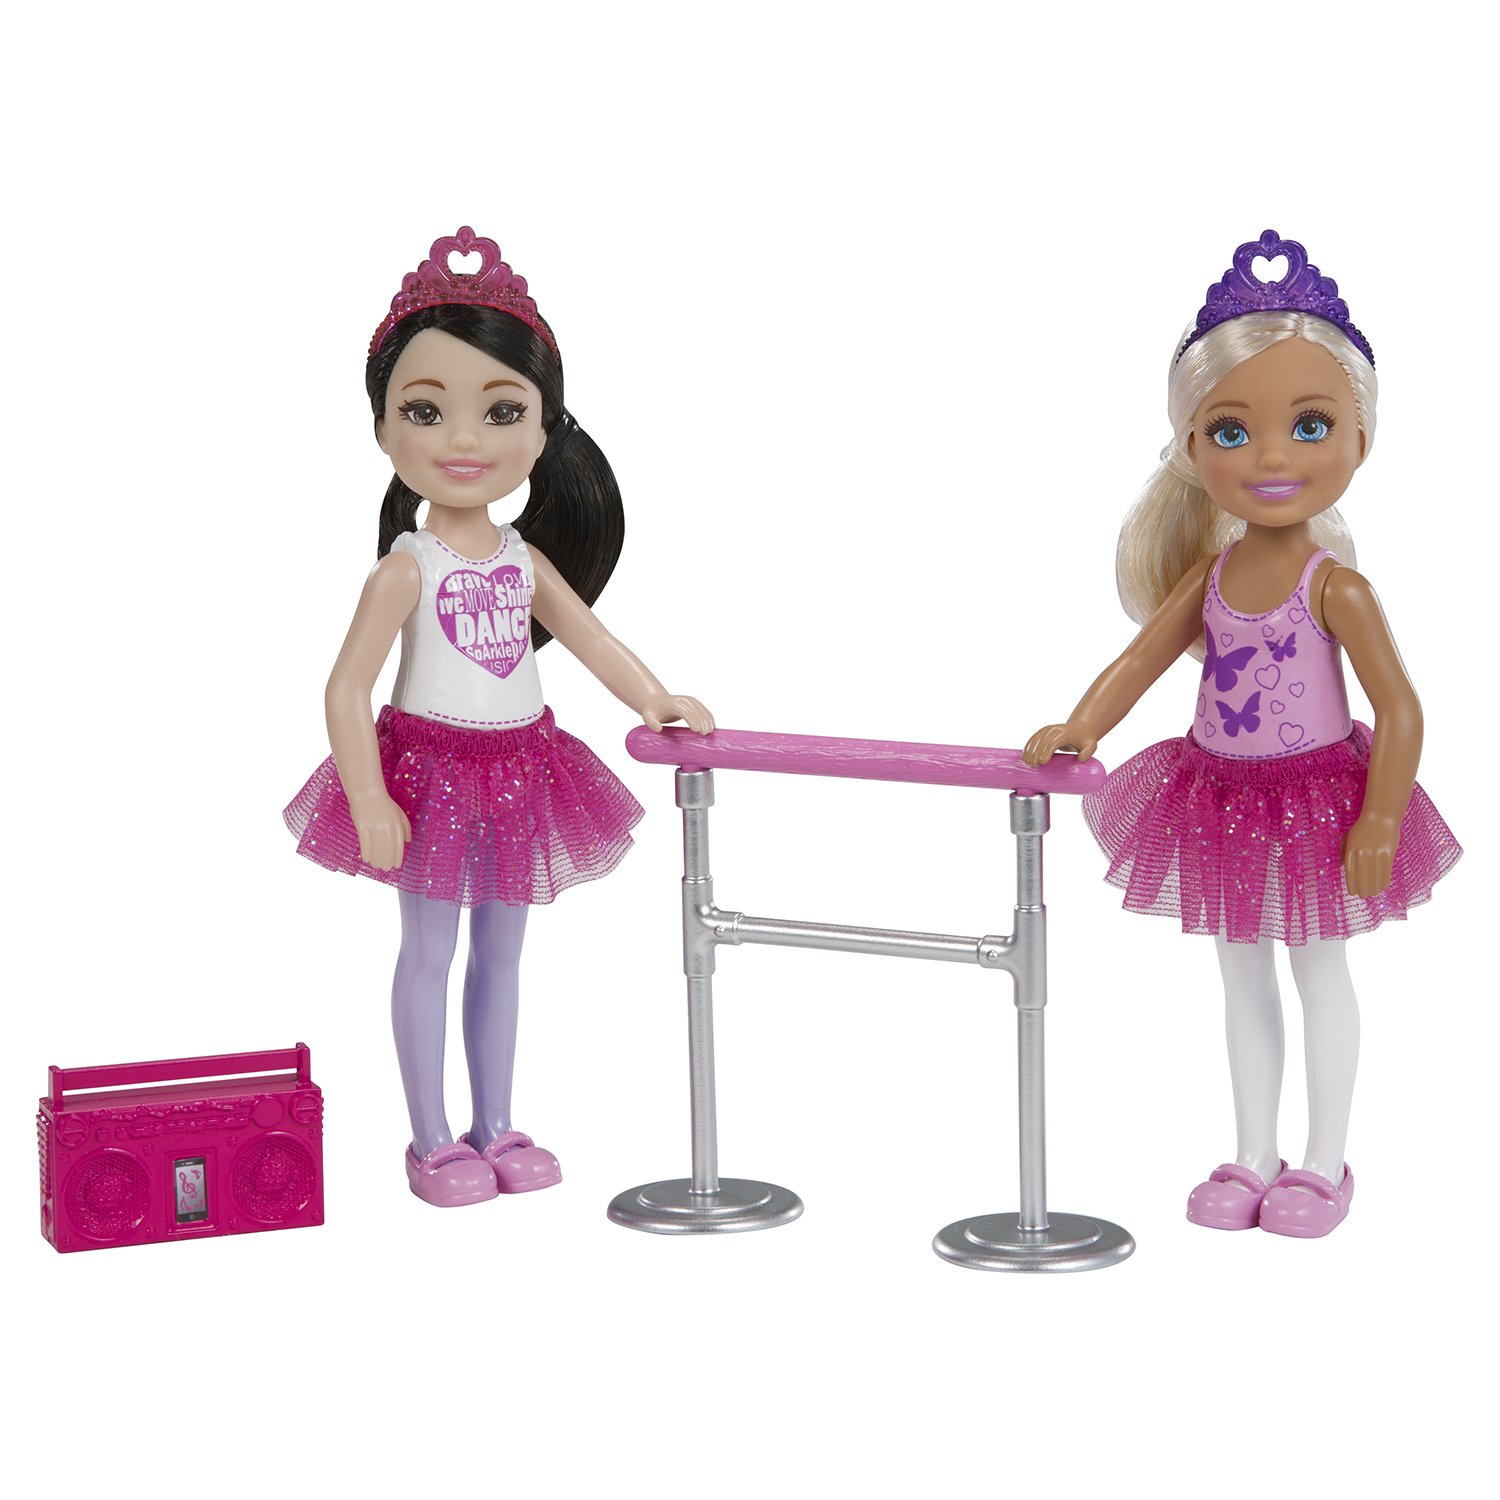 Набор кукол Barbie Челси 2 Балерины, FHK98